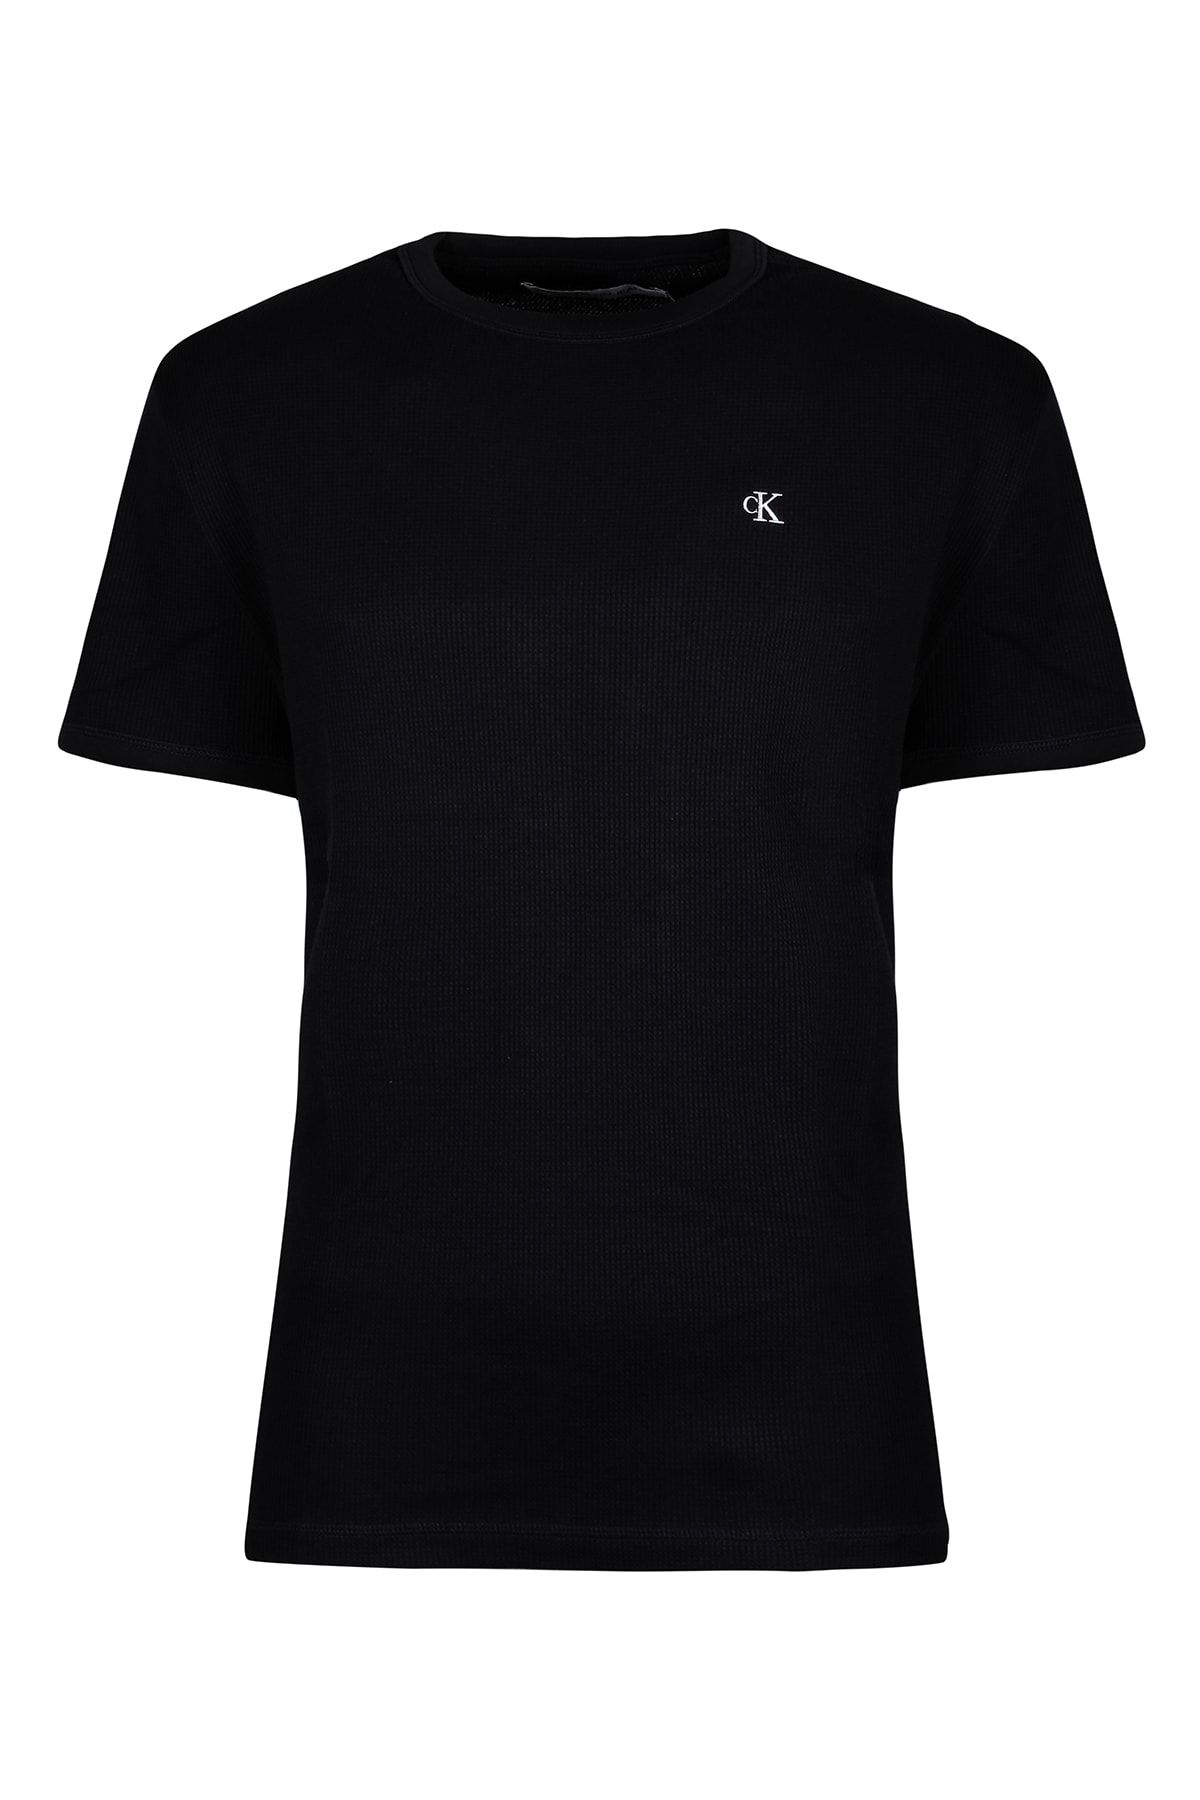 Calvin Klein Erkek Siyah Kısa Kollu T-Shirt